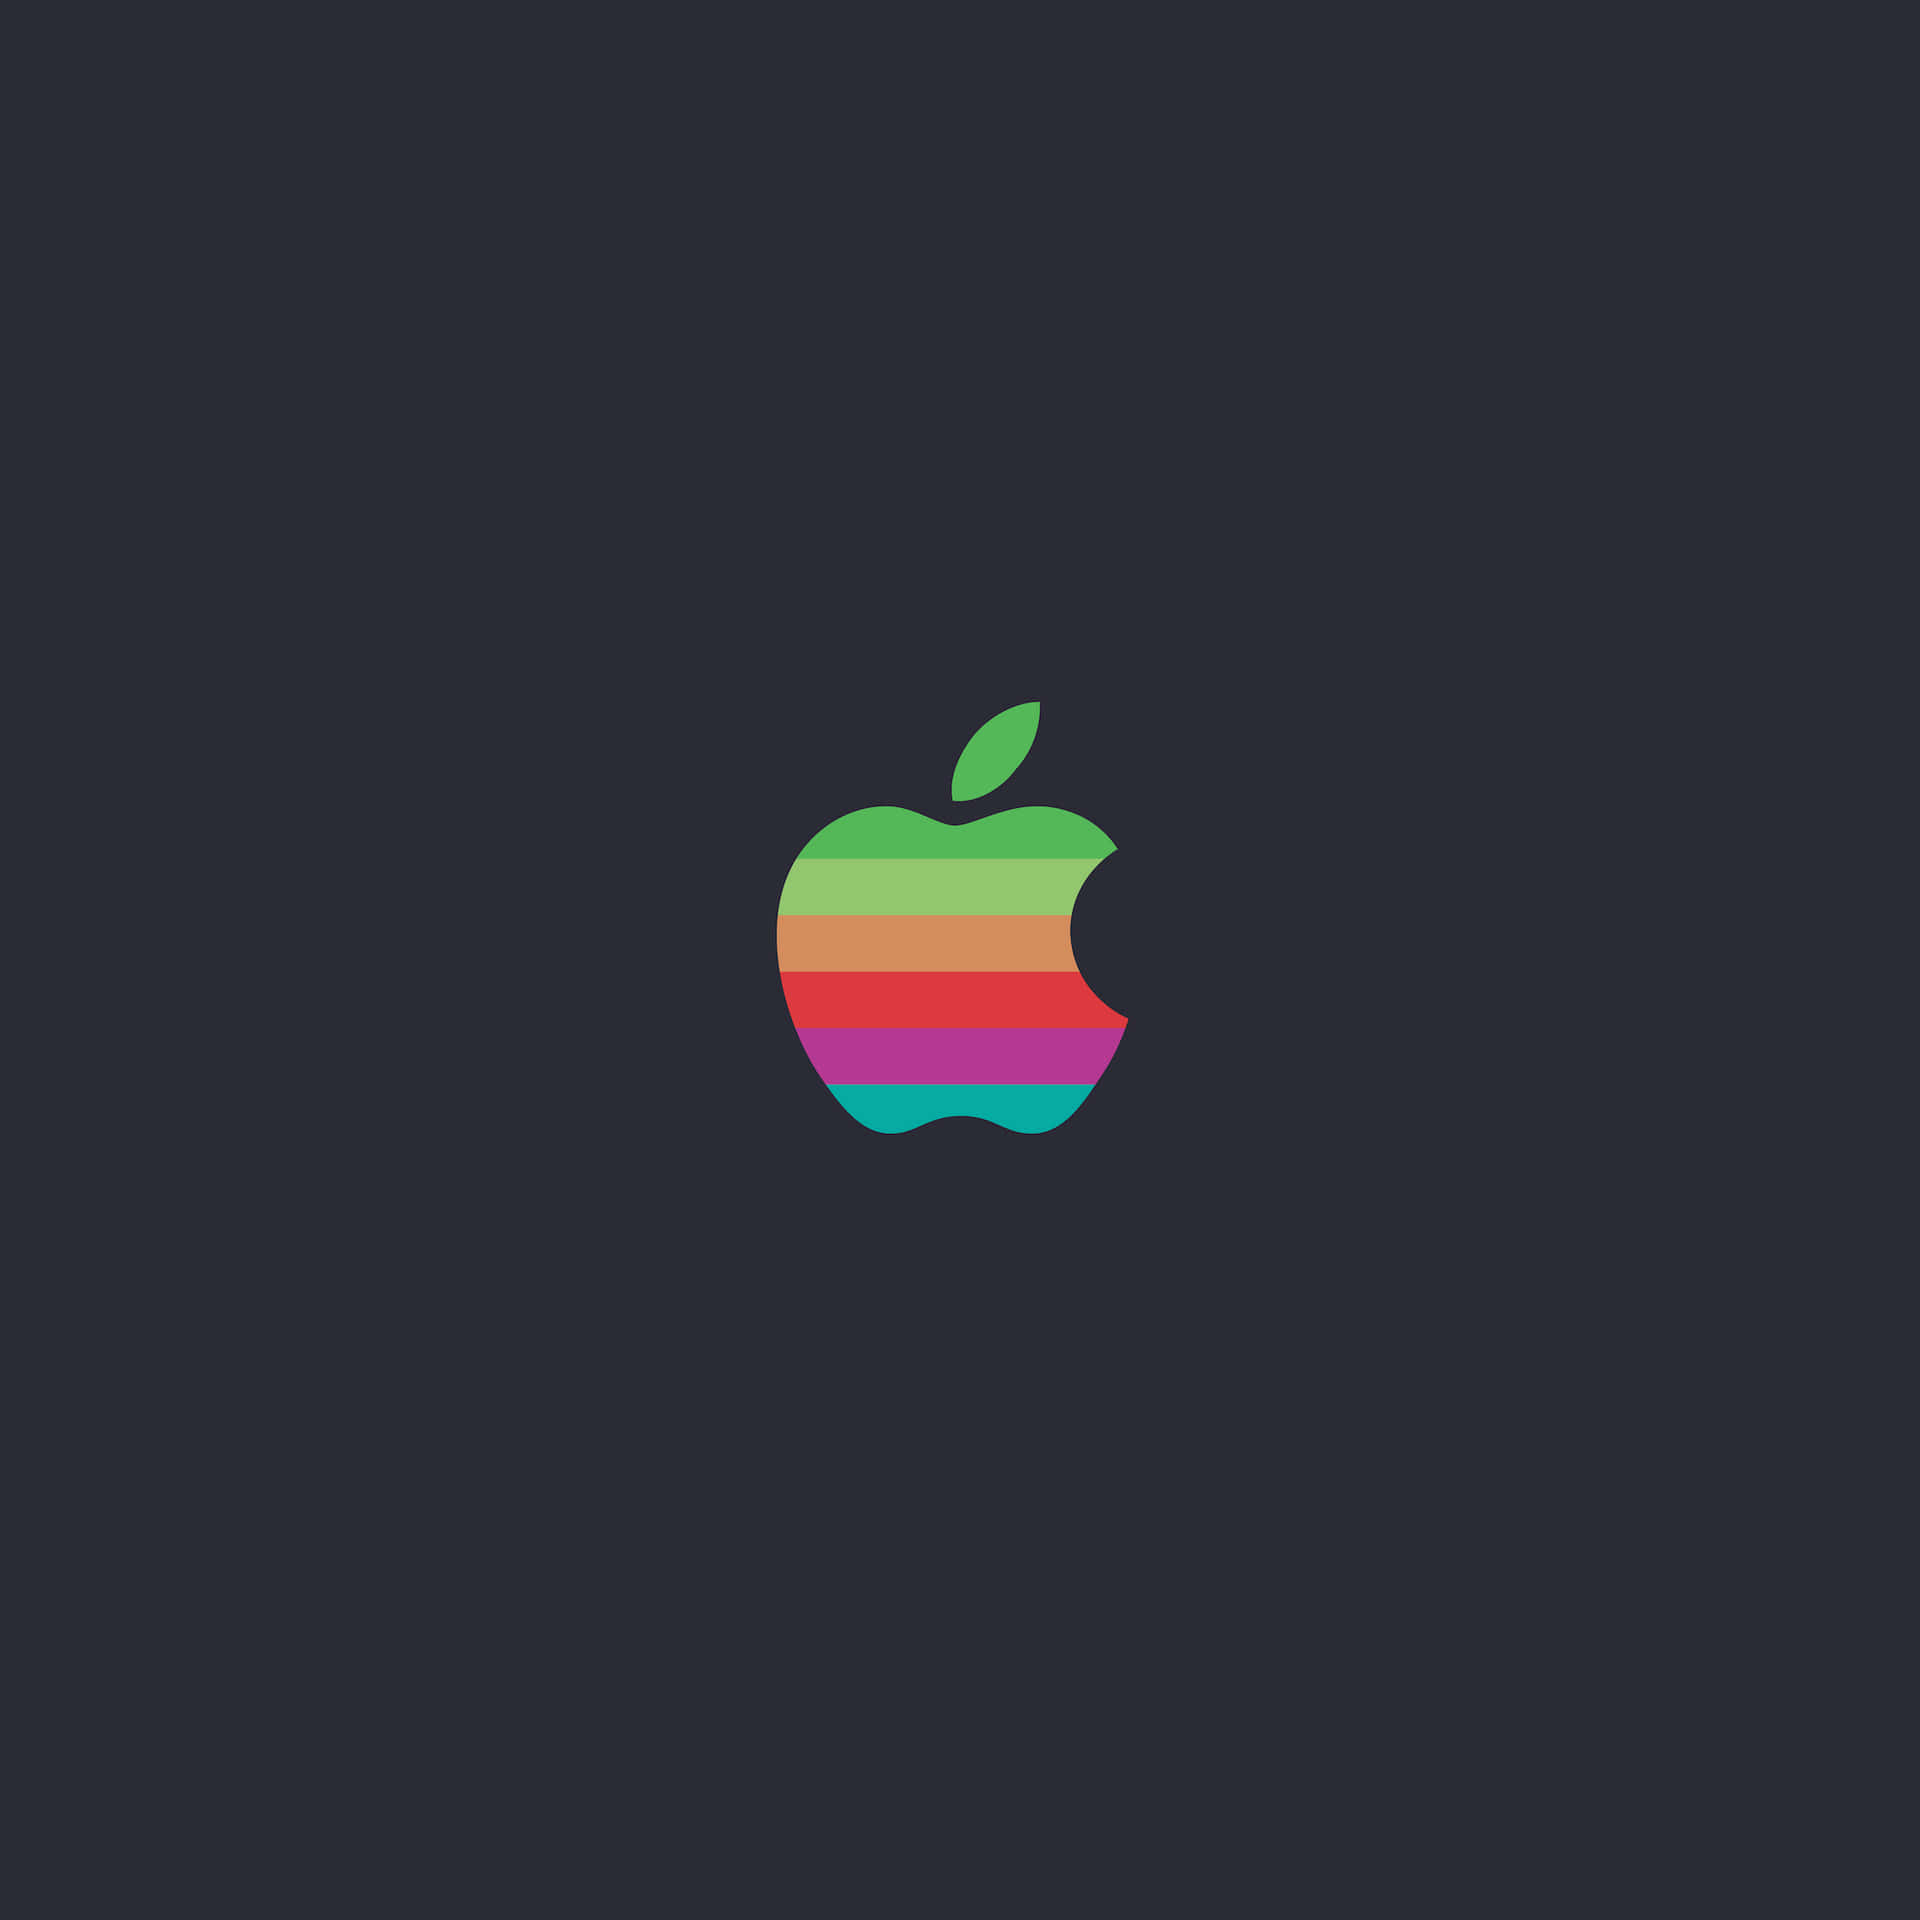 Umarepresentação Abstrata Do Logotipo Original Da Apple Inc. Papel de Parede